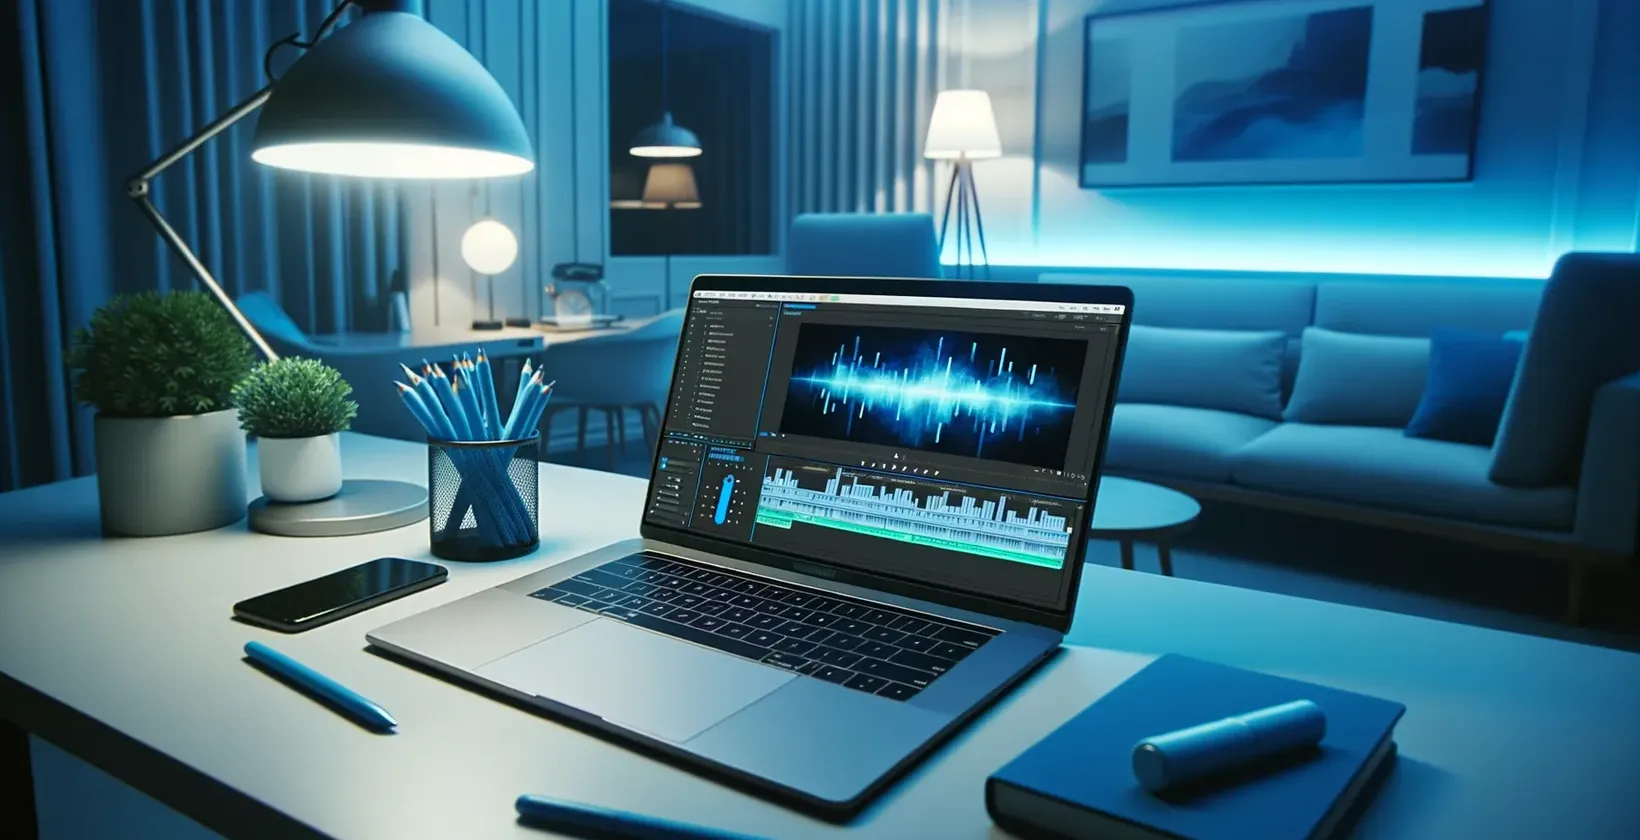 Không gian làm việc phần mềm chuyển giọng nói thành văn bản tốt nhất với máy tính xách tay hiển thị dạng sóng âm thanh trên bàn trắng, đèn, điện thoại và văn phòng phẩm